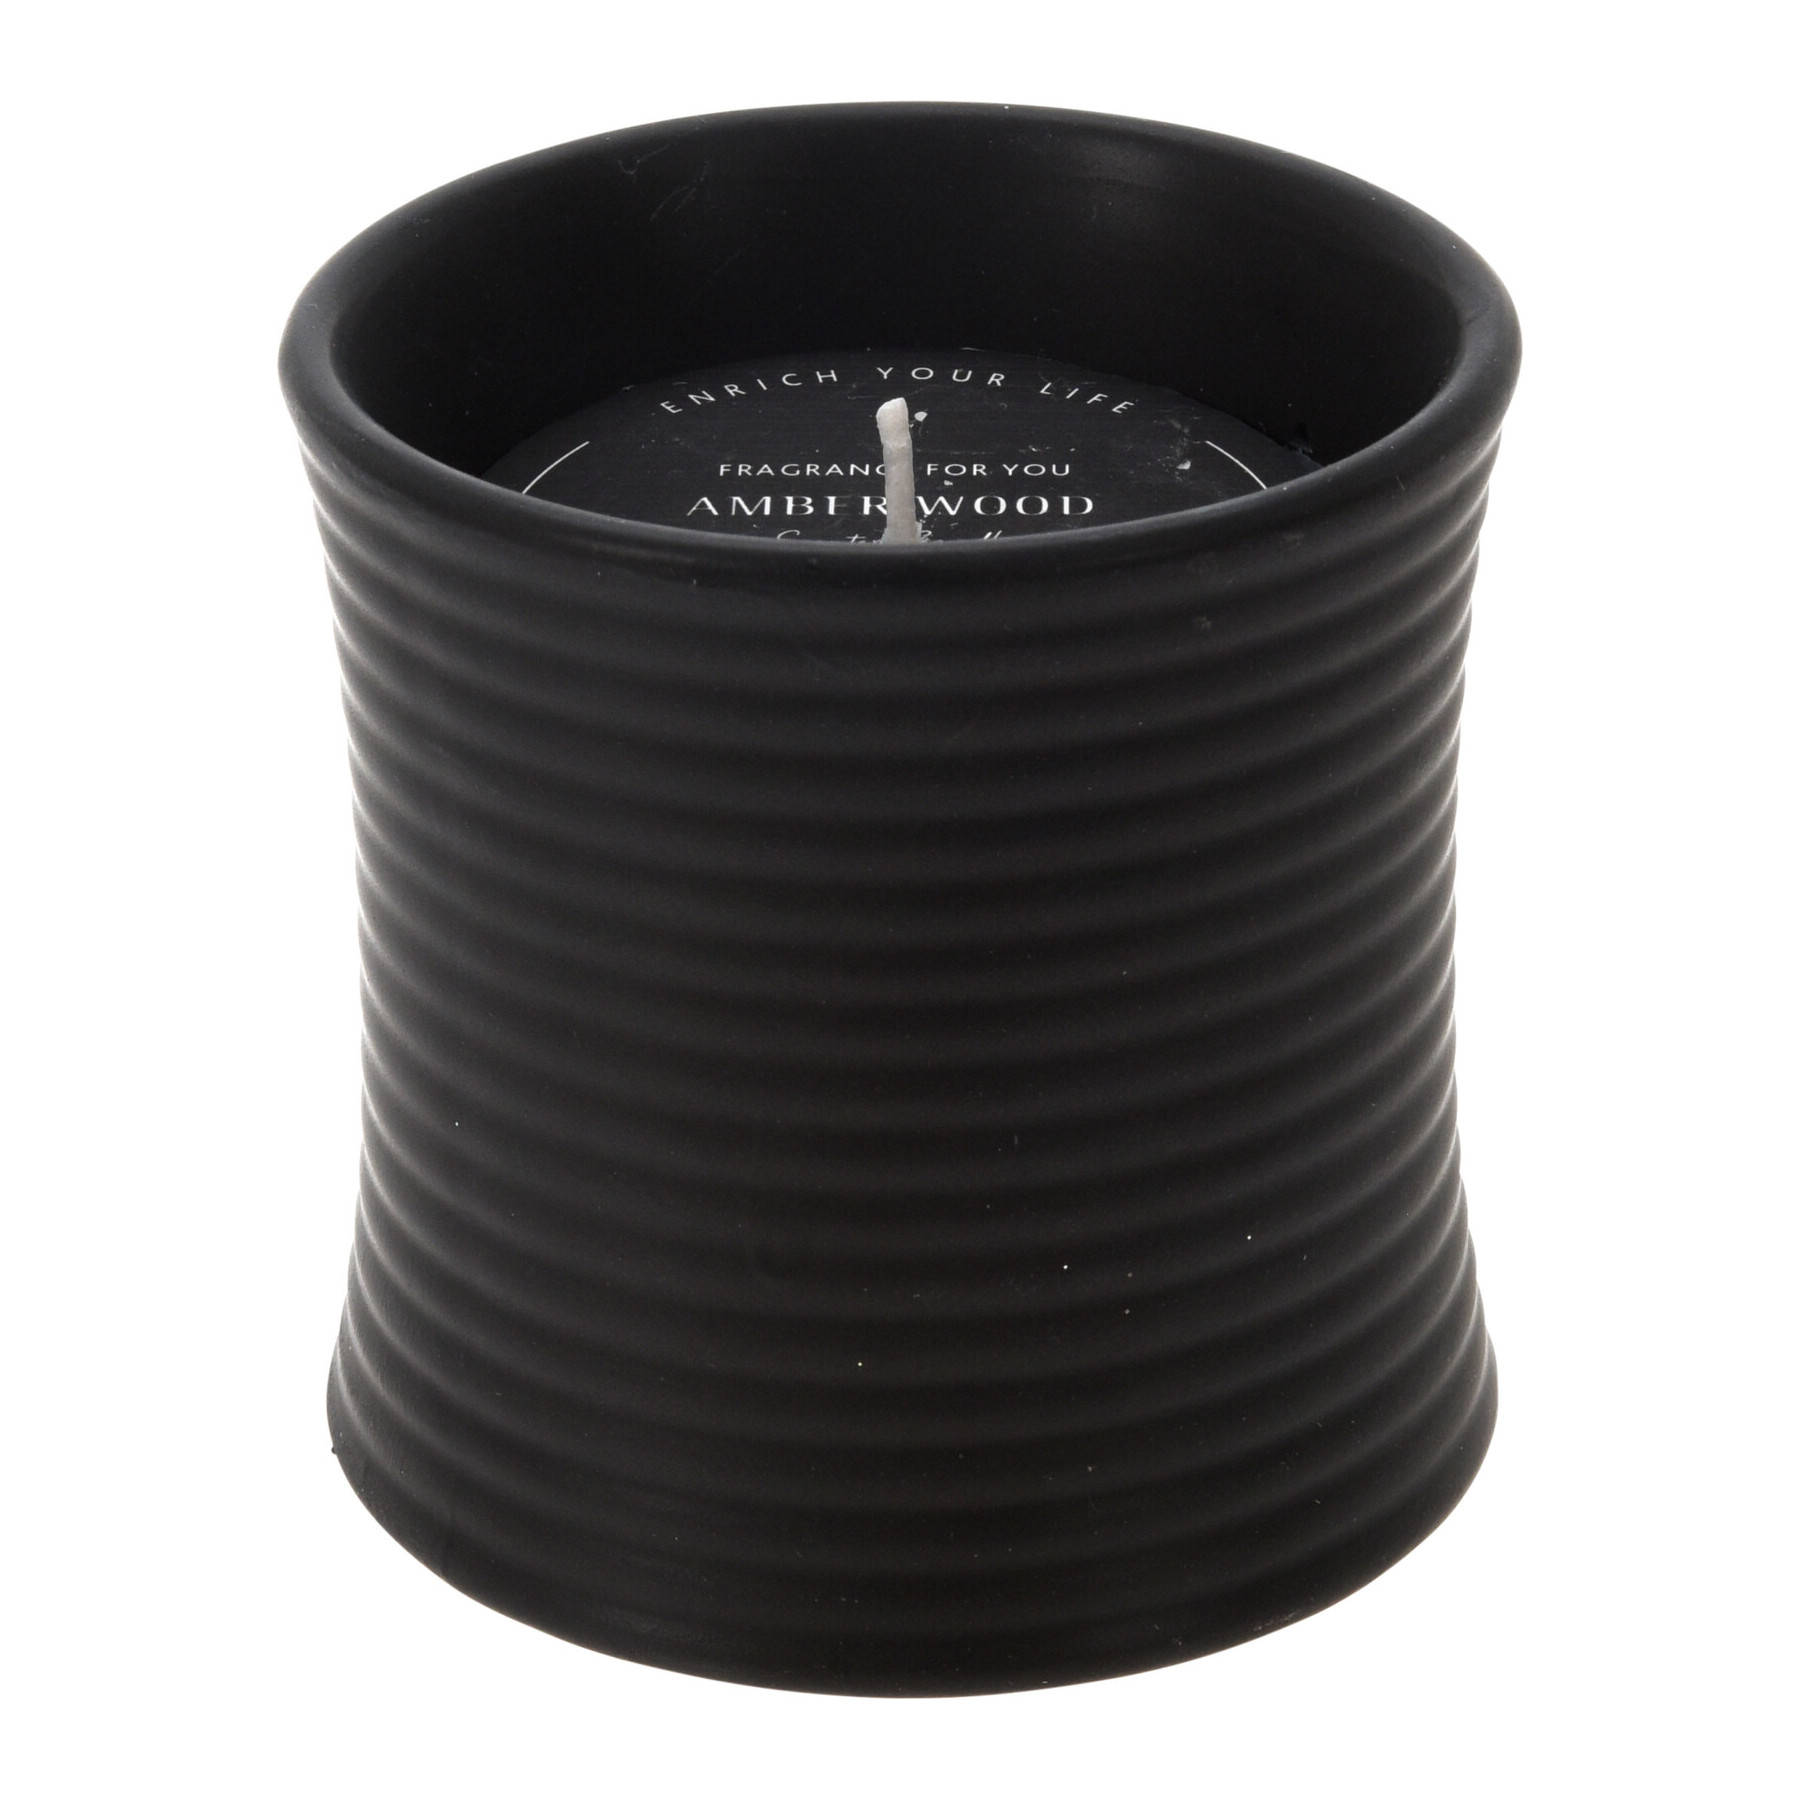 Geurkaars Amber Wood in zwarte ronde keramische pot 10x10cm (per 2 stuks) – B2B